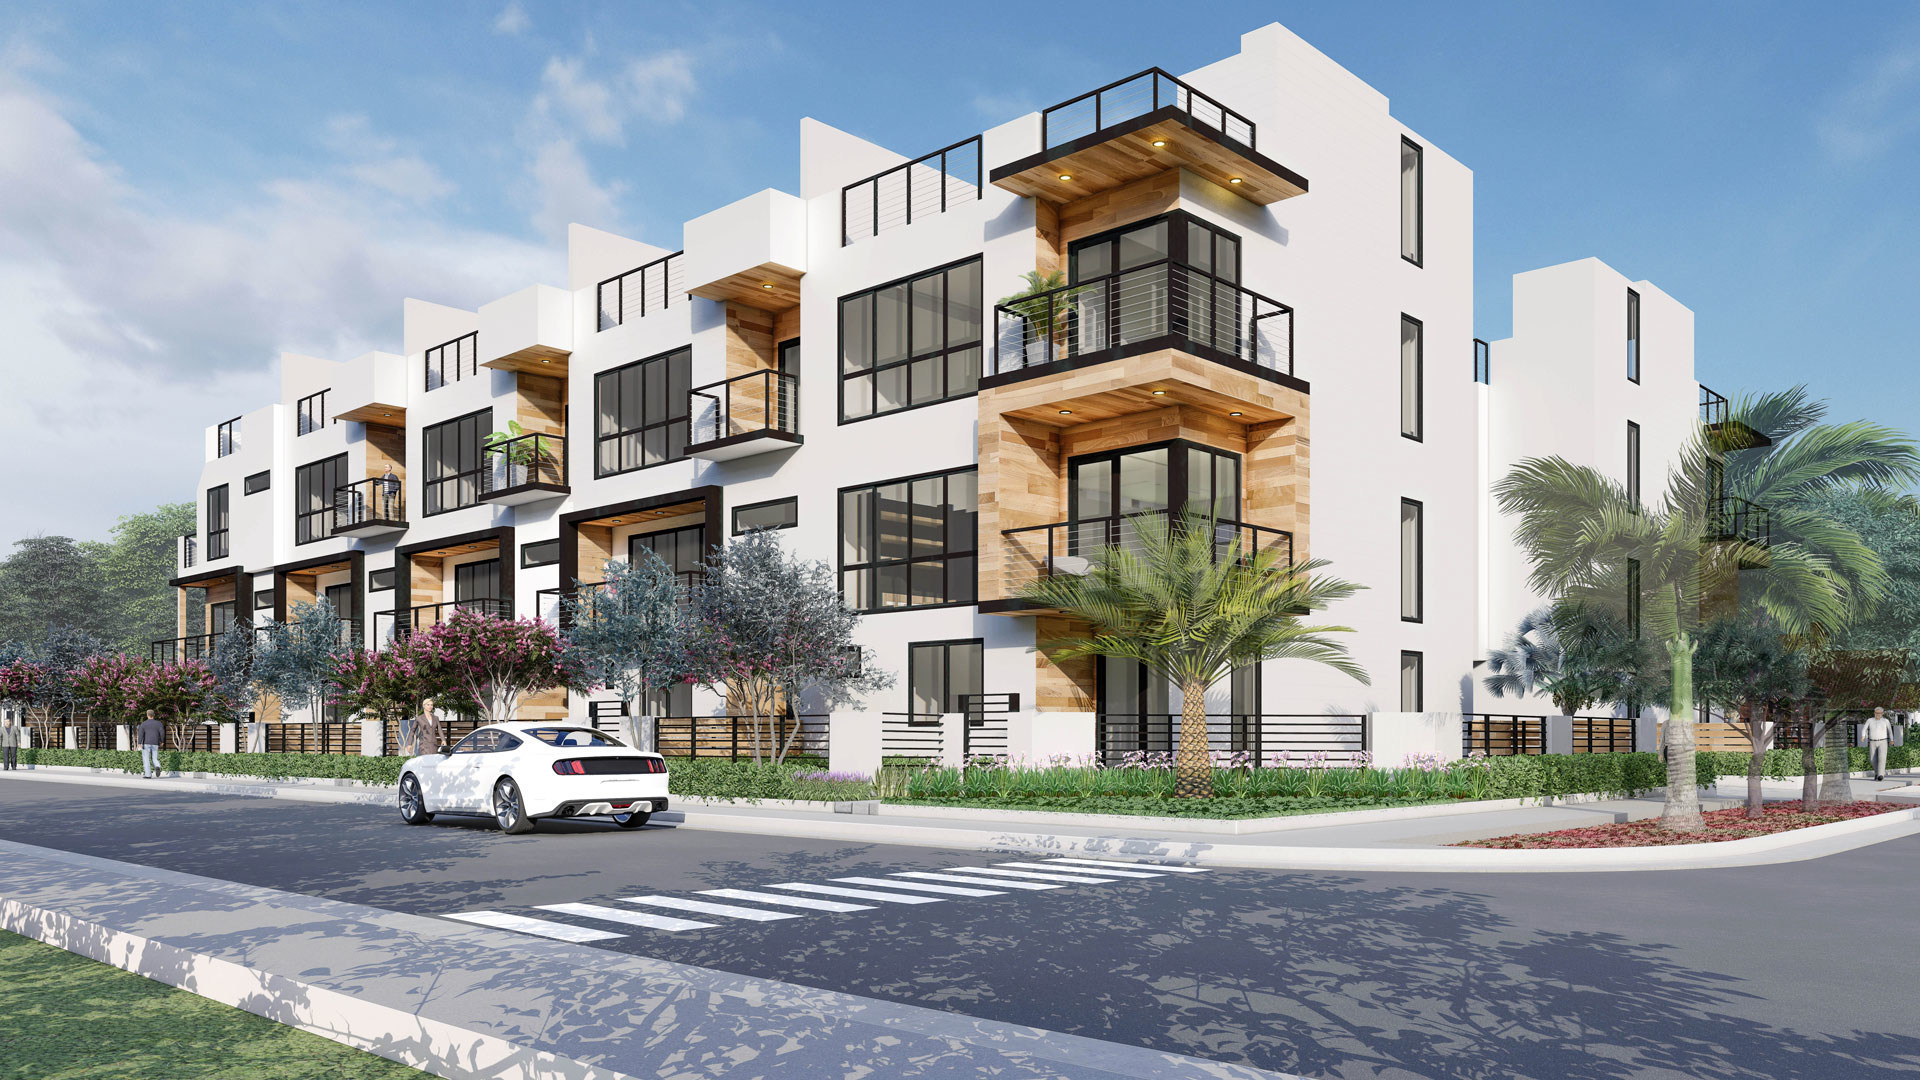 Urbane Capital’s luxury development in Fort Lauderdale wins approval